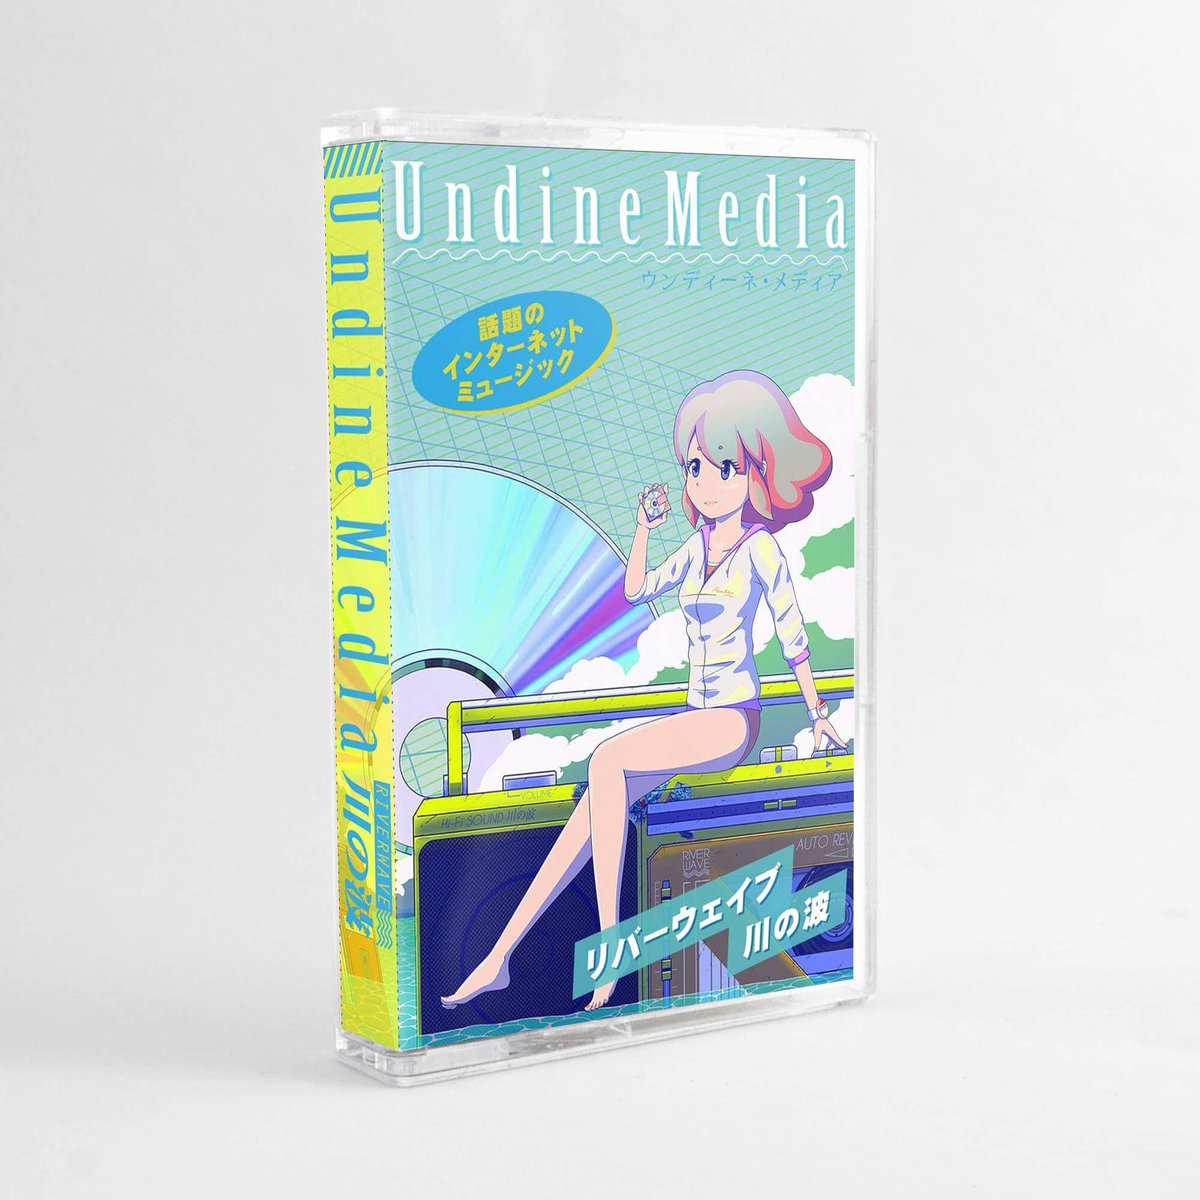 Undine Media by Riverwave 川の波